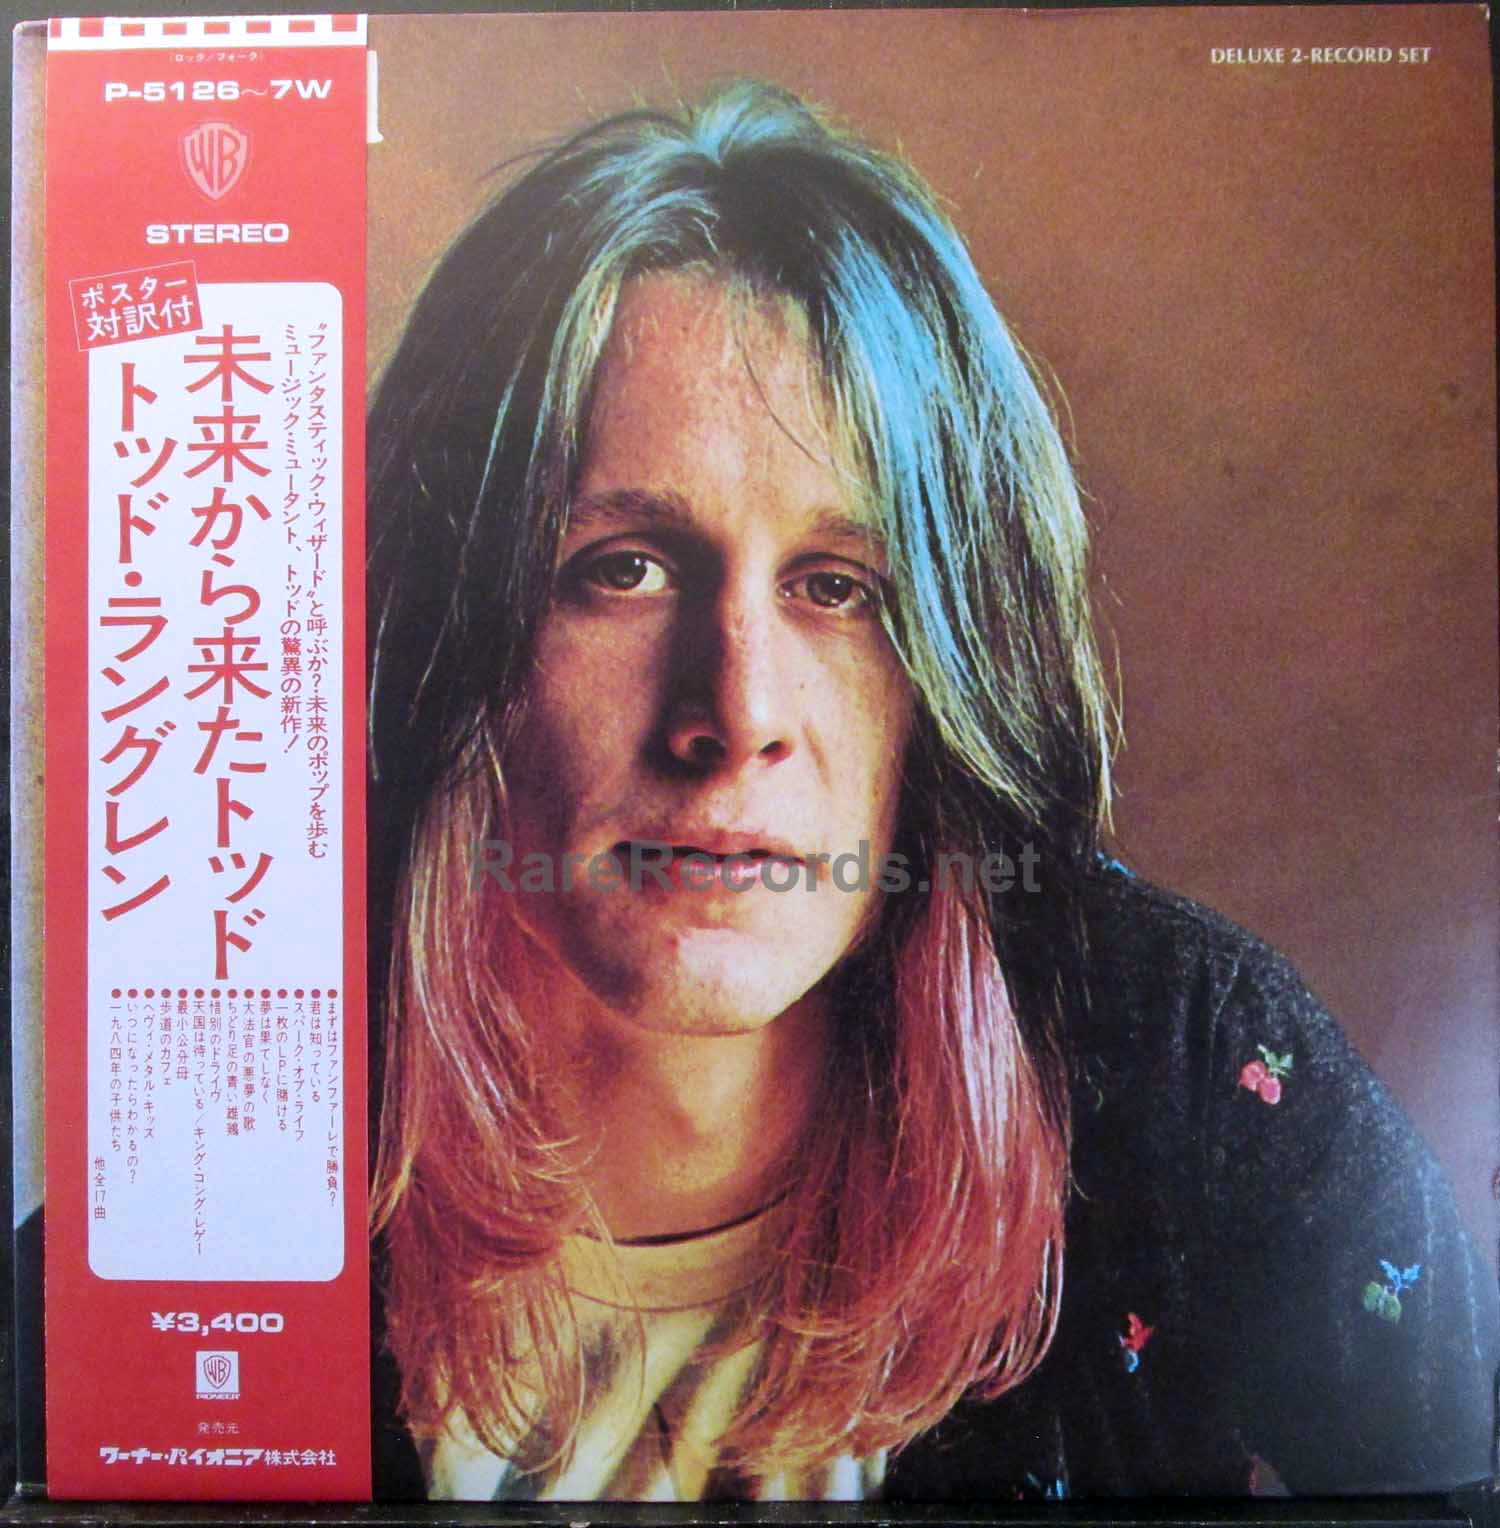 Todd Rundgren - Todd 1974 Japan 2 LP set with obi